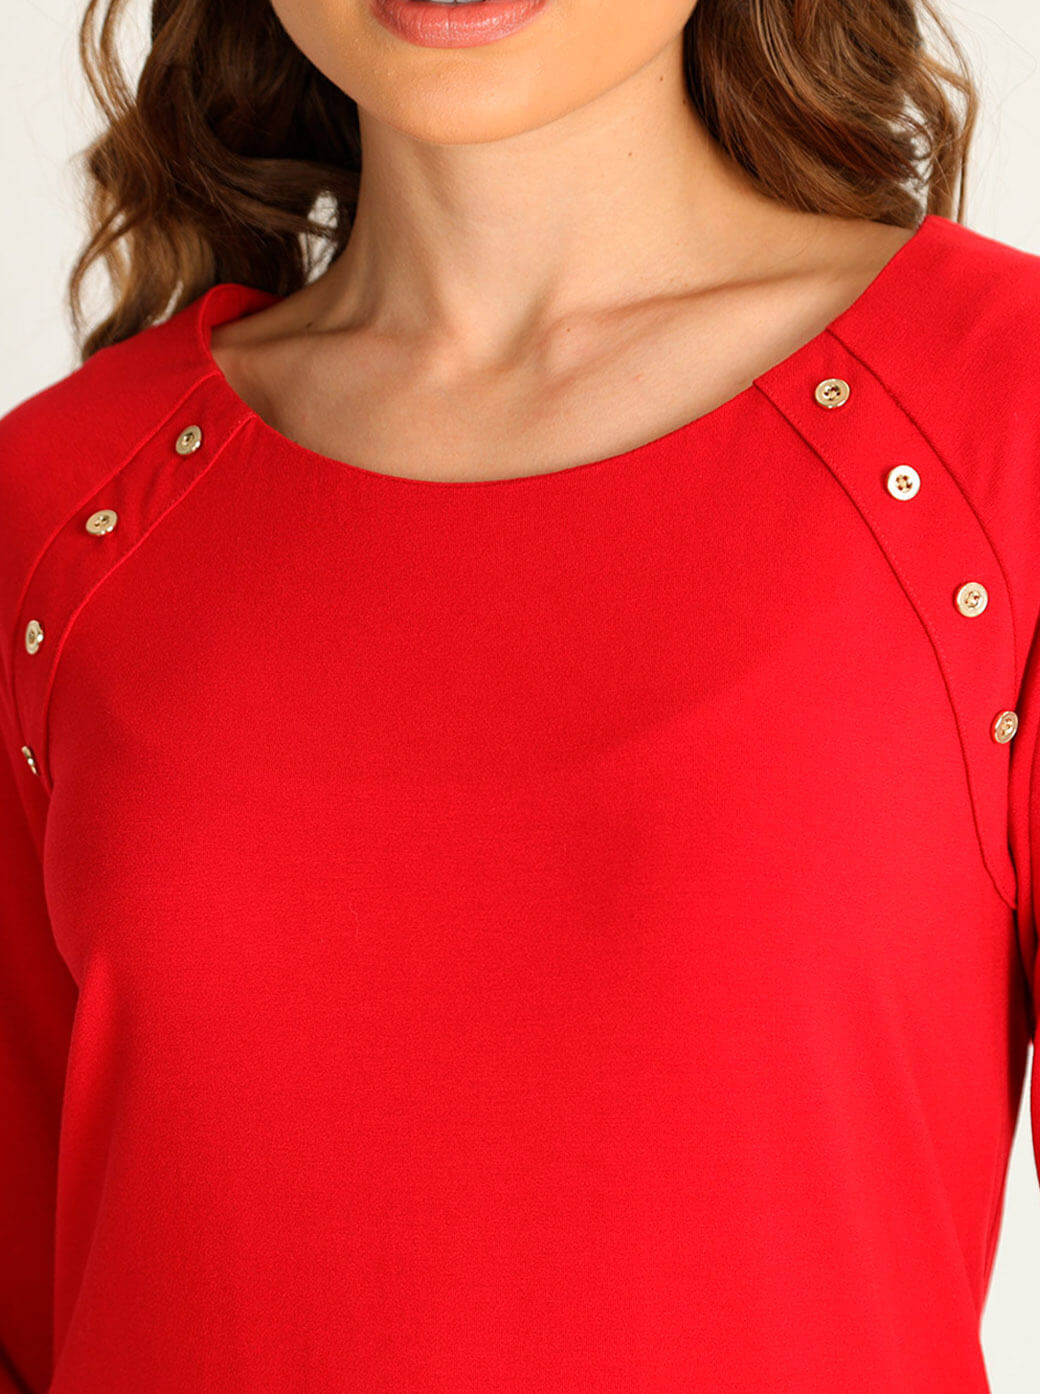 Blusa roja con botones dorados